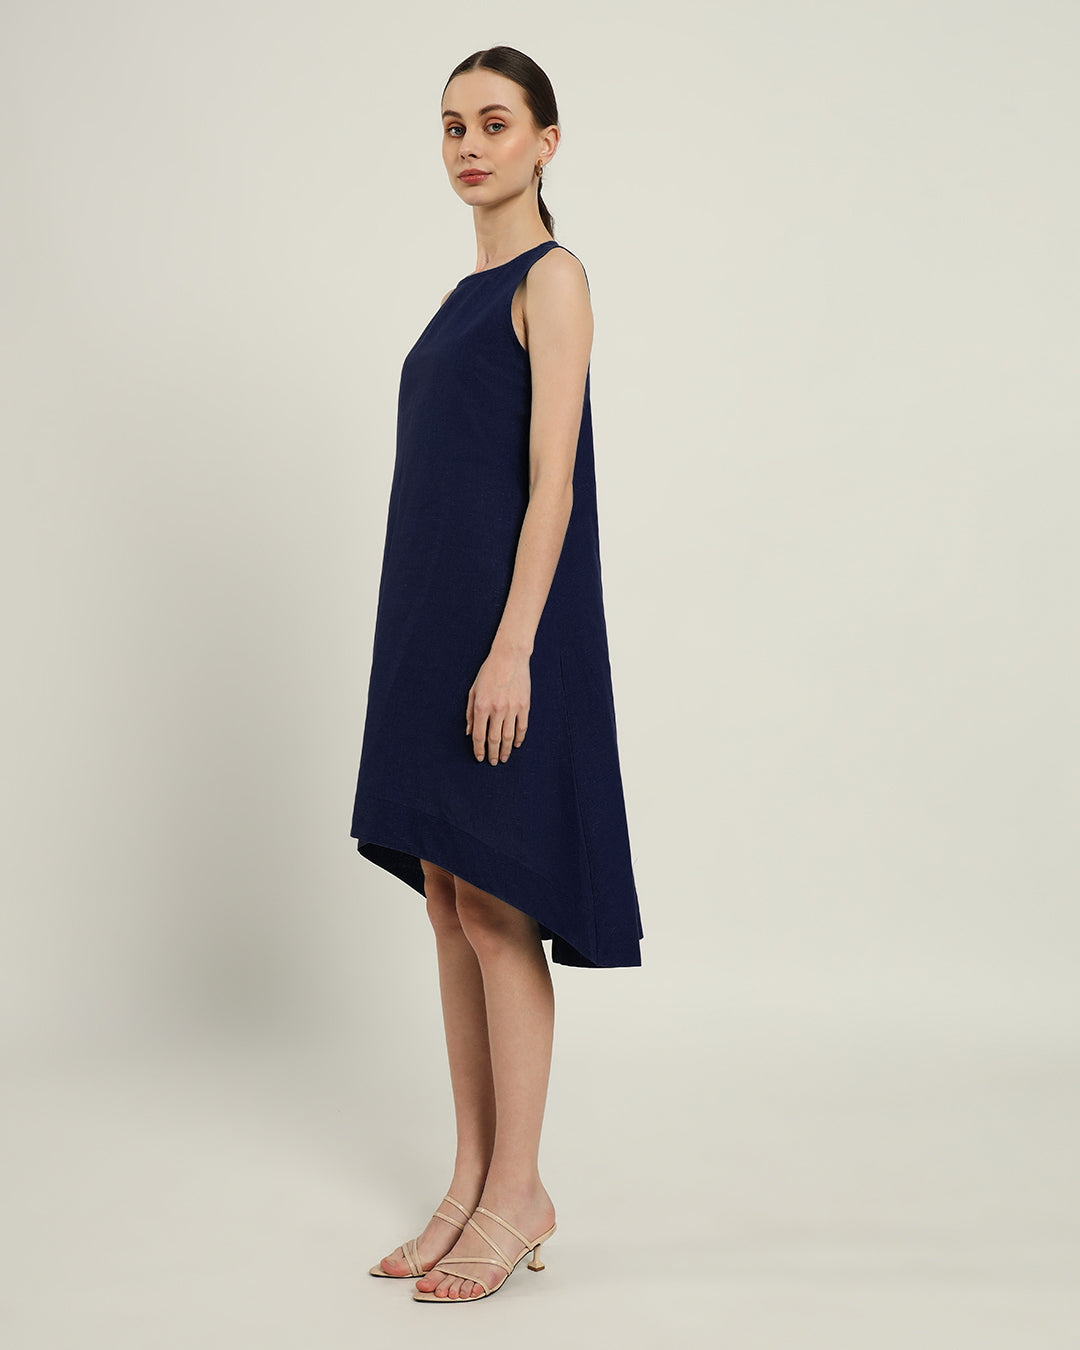 The Odesa Daisy Midnight Blue Linen Dress